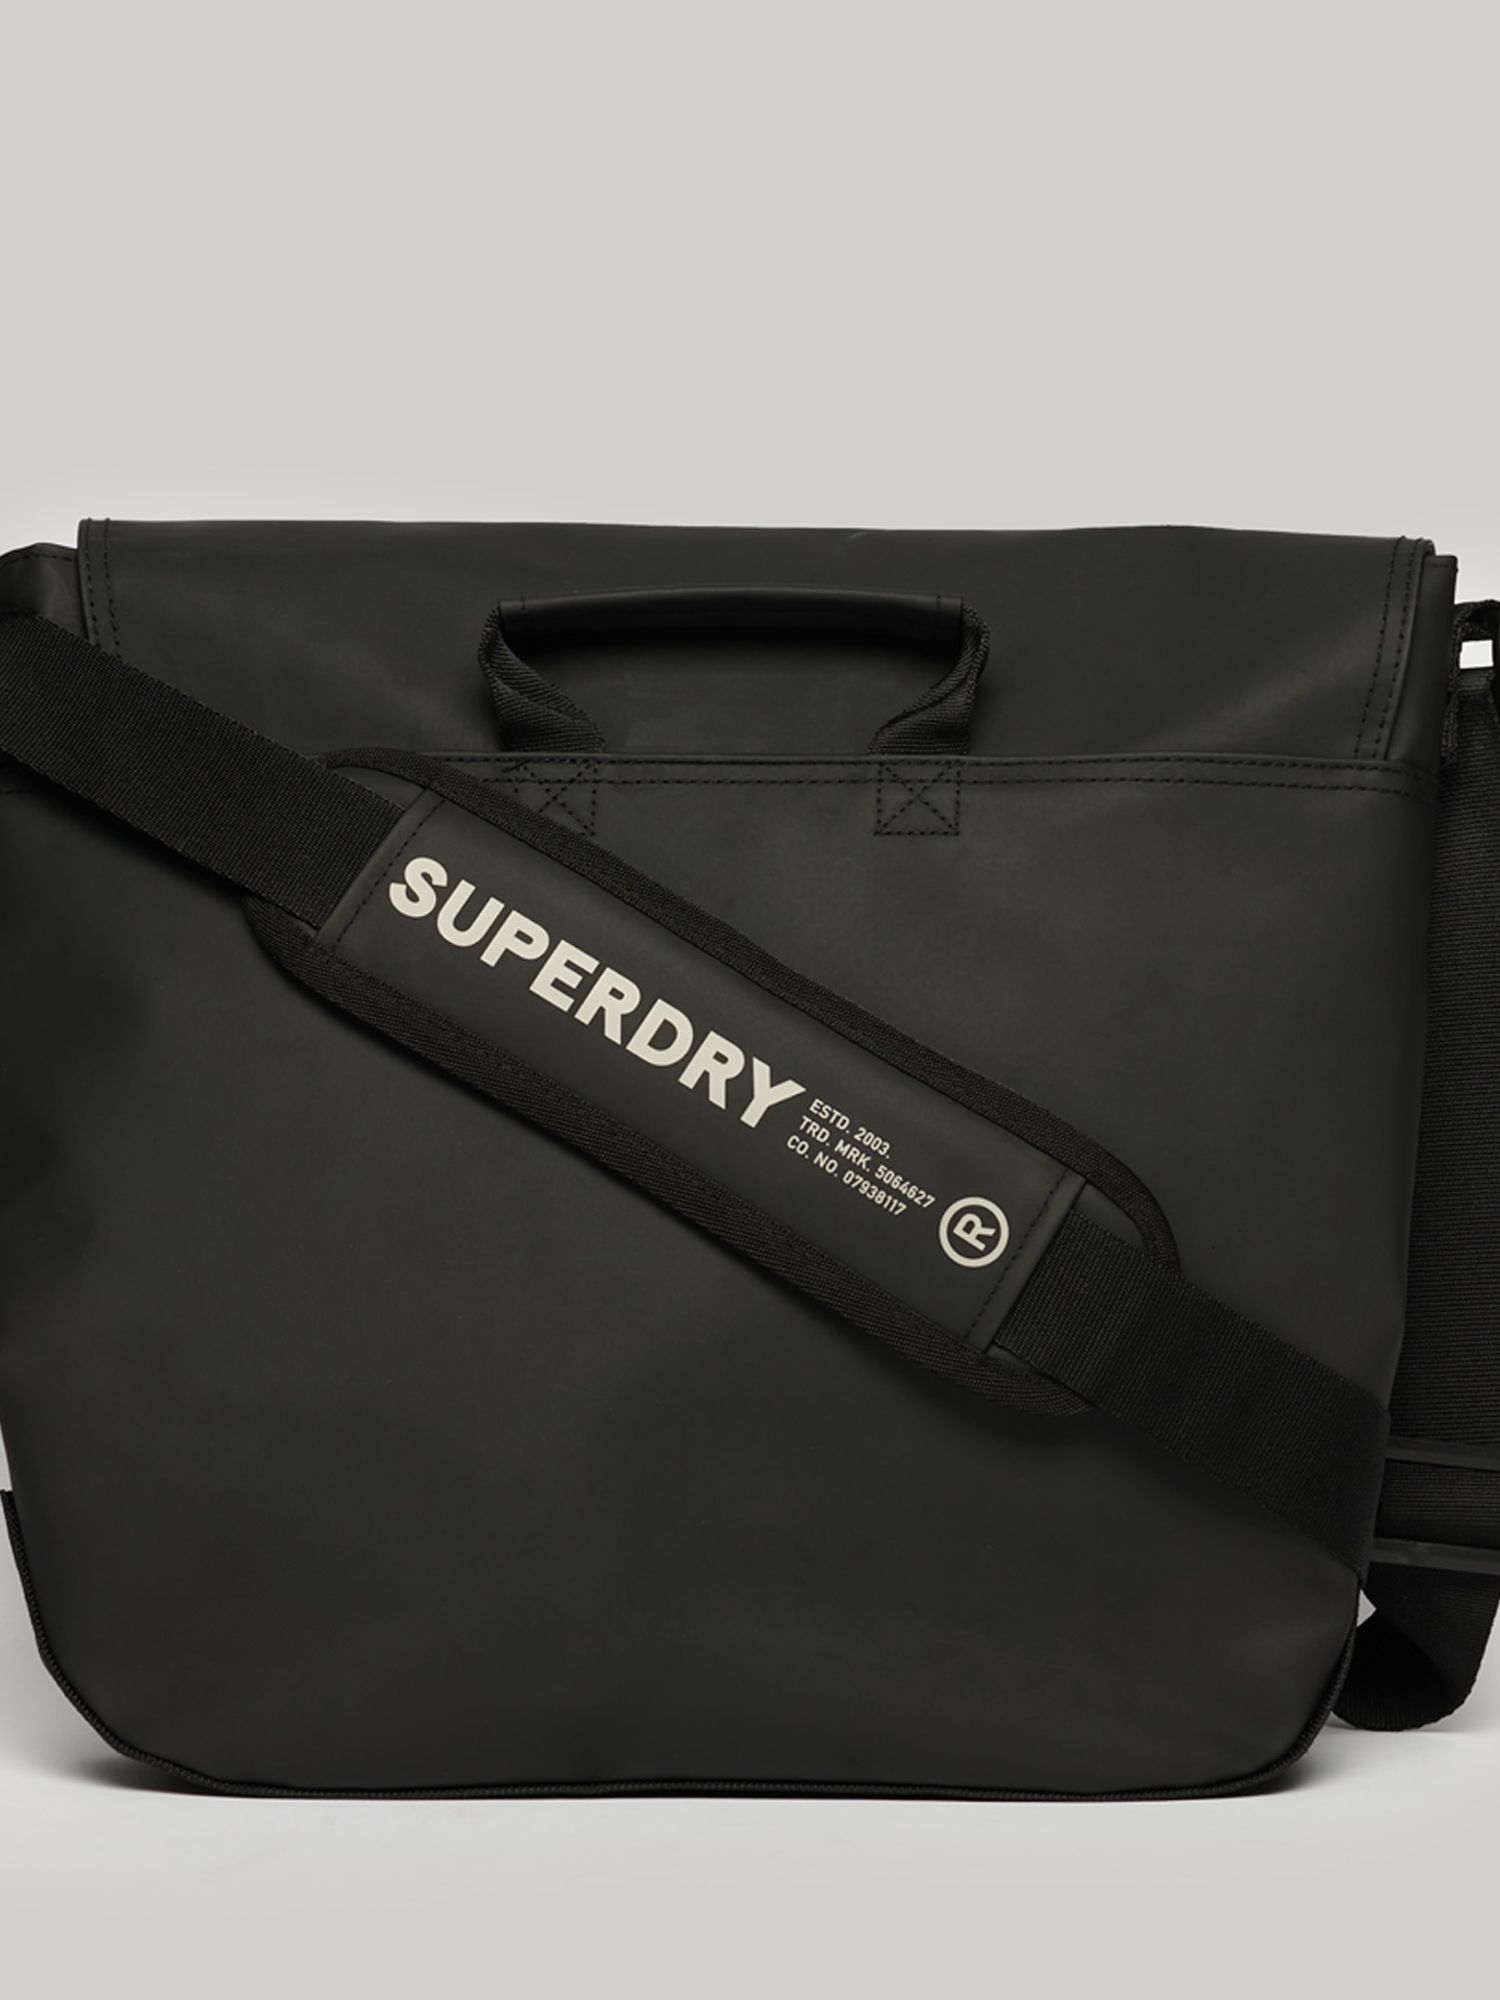 Superdry Logo Messenger Bag, Black at John Lewis & Partners